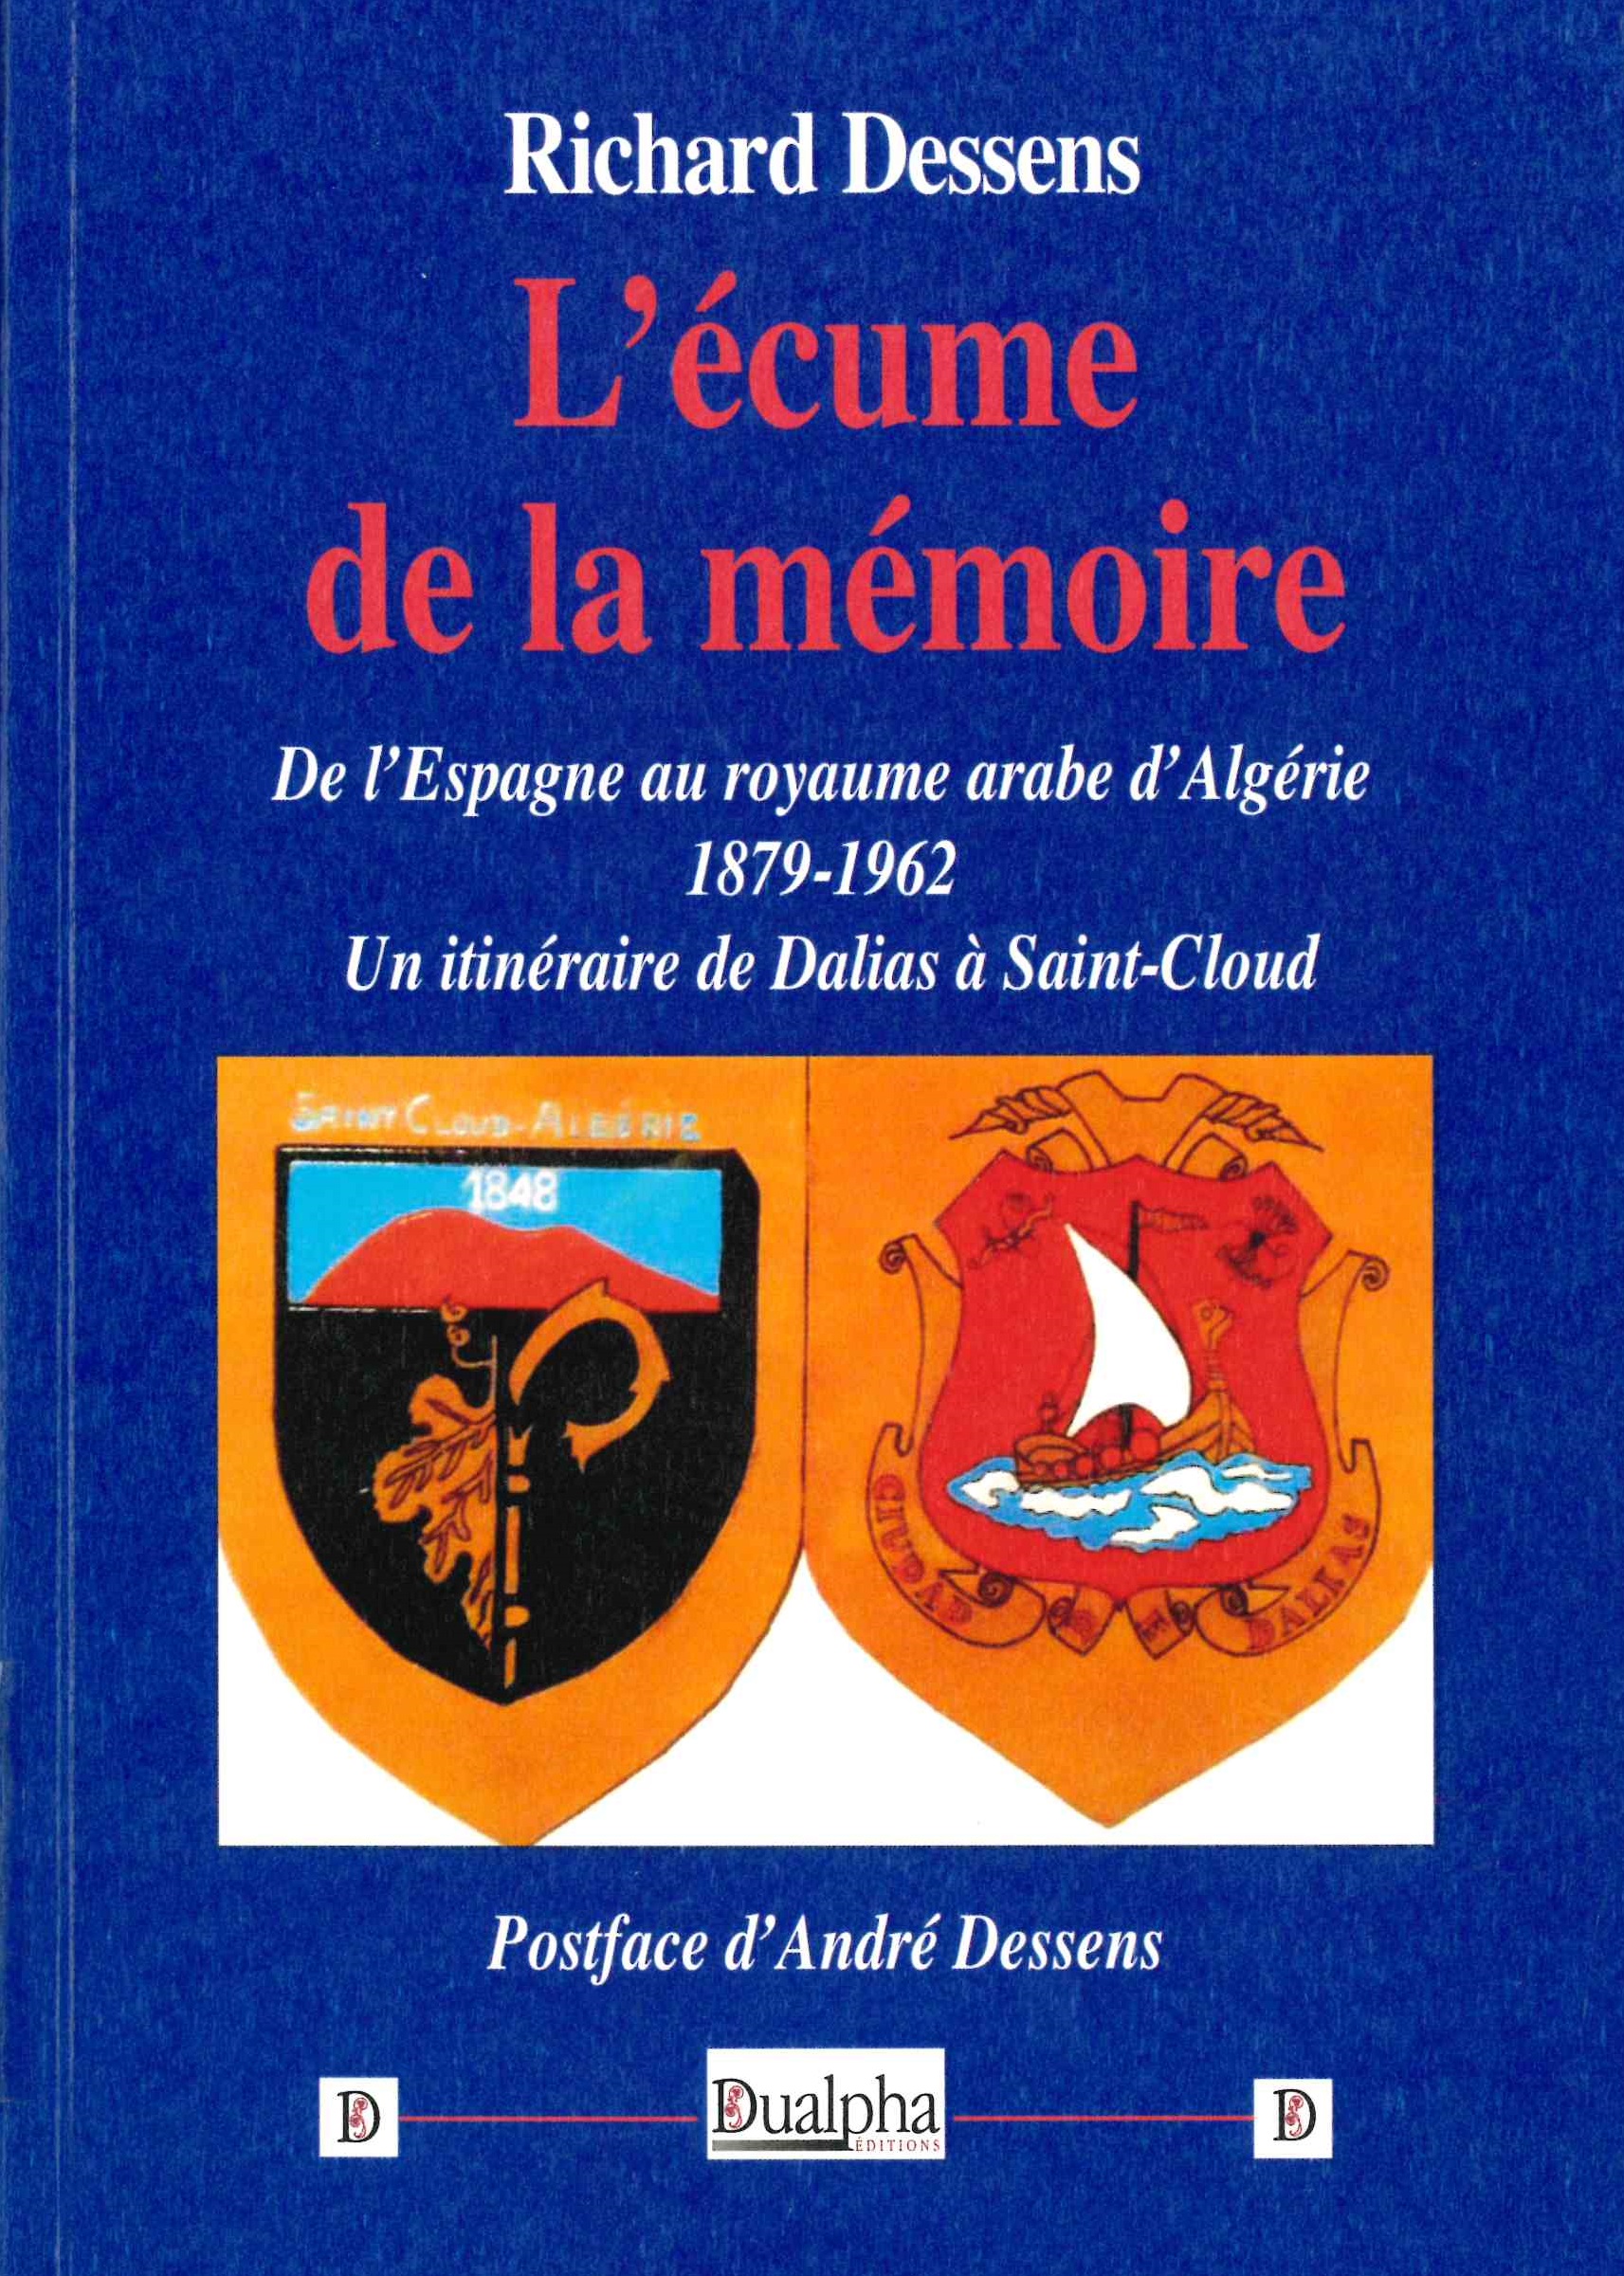 Dessens (Richard), L’écume de la mémoire : de l’Espagne au royaume arabe d’Algérie (1879-1962) : un itinéraire de Dalias à saint-Cloud